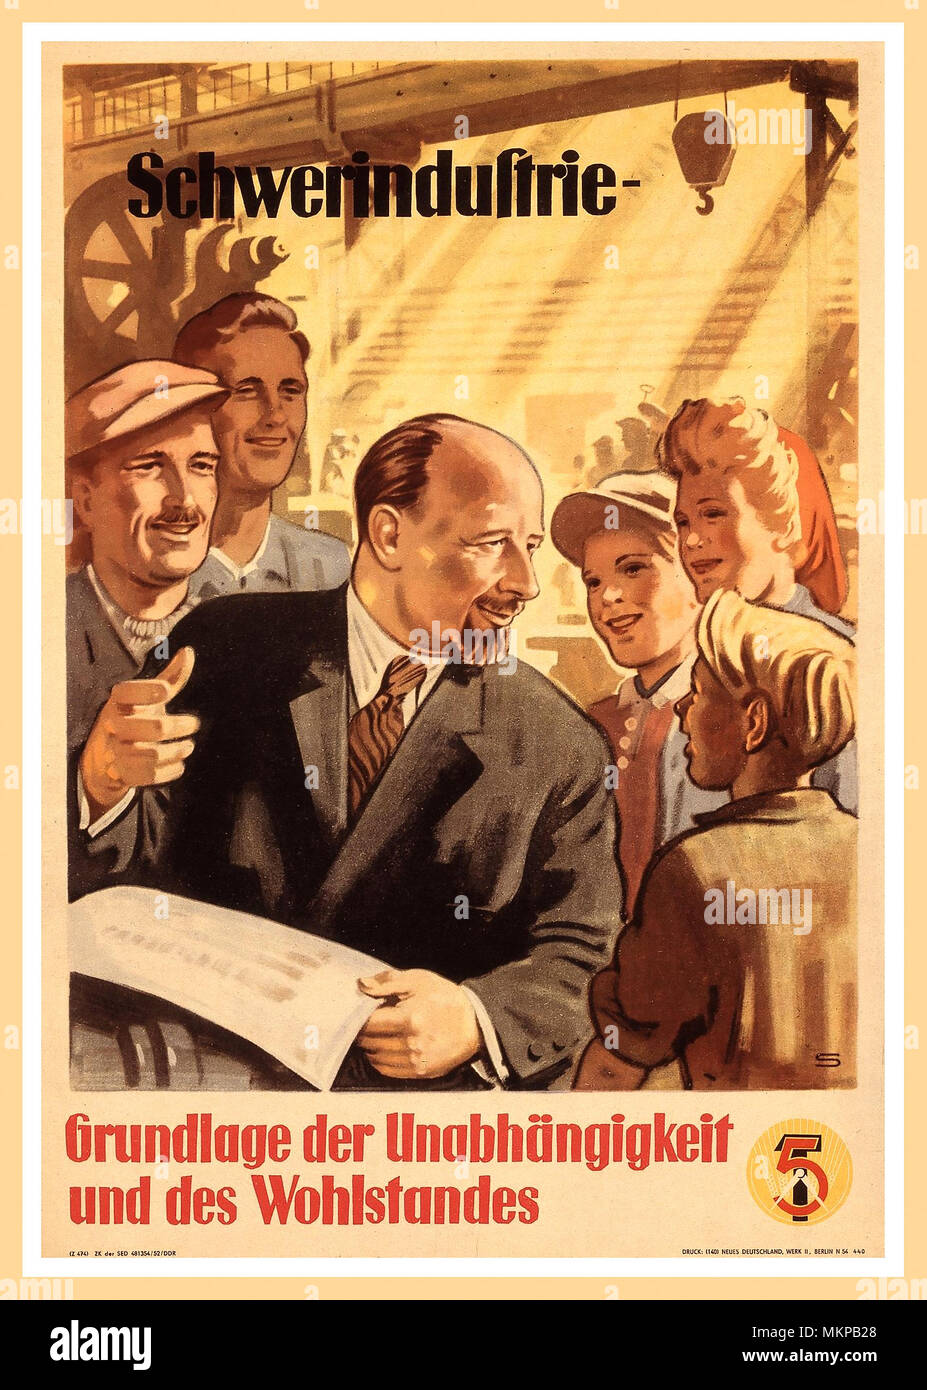 1952 L'Allemagne de l'après-RDA République démocratique allemande affiche publicitaire de propagande à partir de 1950 pour les cinq premières années. Walter Ulbricht est illustré dans le milieu des travailleurs. Son industrie lourde est au cœur du premier Plan quinquennal conformément à la propagande gouvernementale, mais inévitablement, l'industrie des biens de consommation est négligé. 'L'industrie lourde - la base de l'indépendance et la prospérité" en RDA après sa fondation en 1949, les formes d'appropriation politique et le système économique de la RDA sont rigoureusement changé en accord avec le modèle soviétique. Banque D'Images